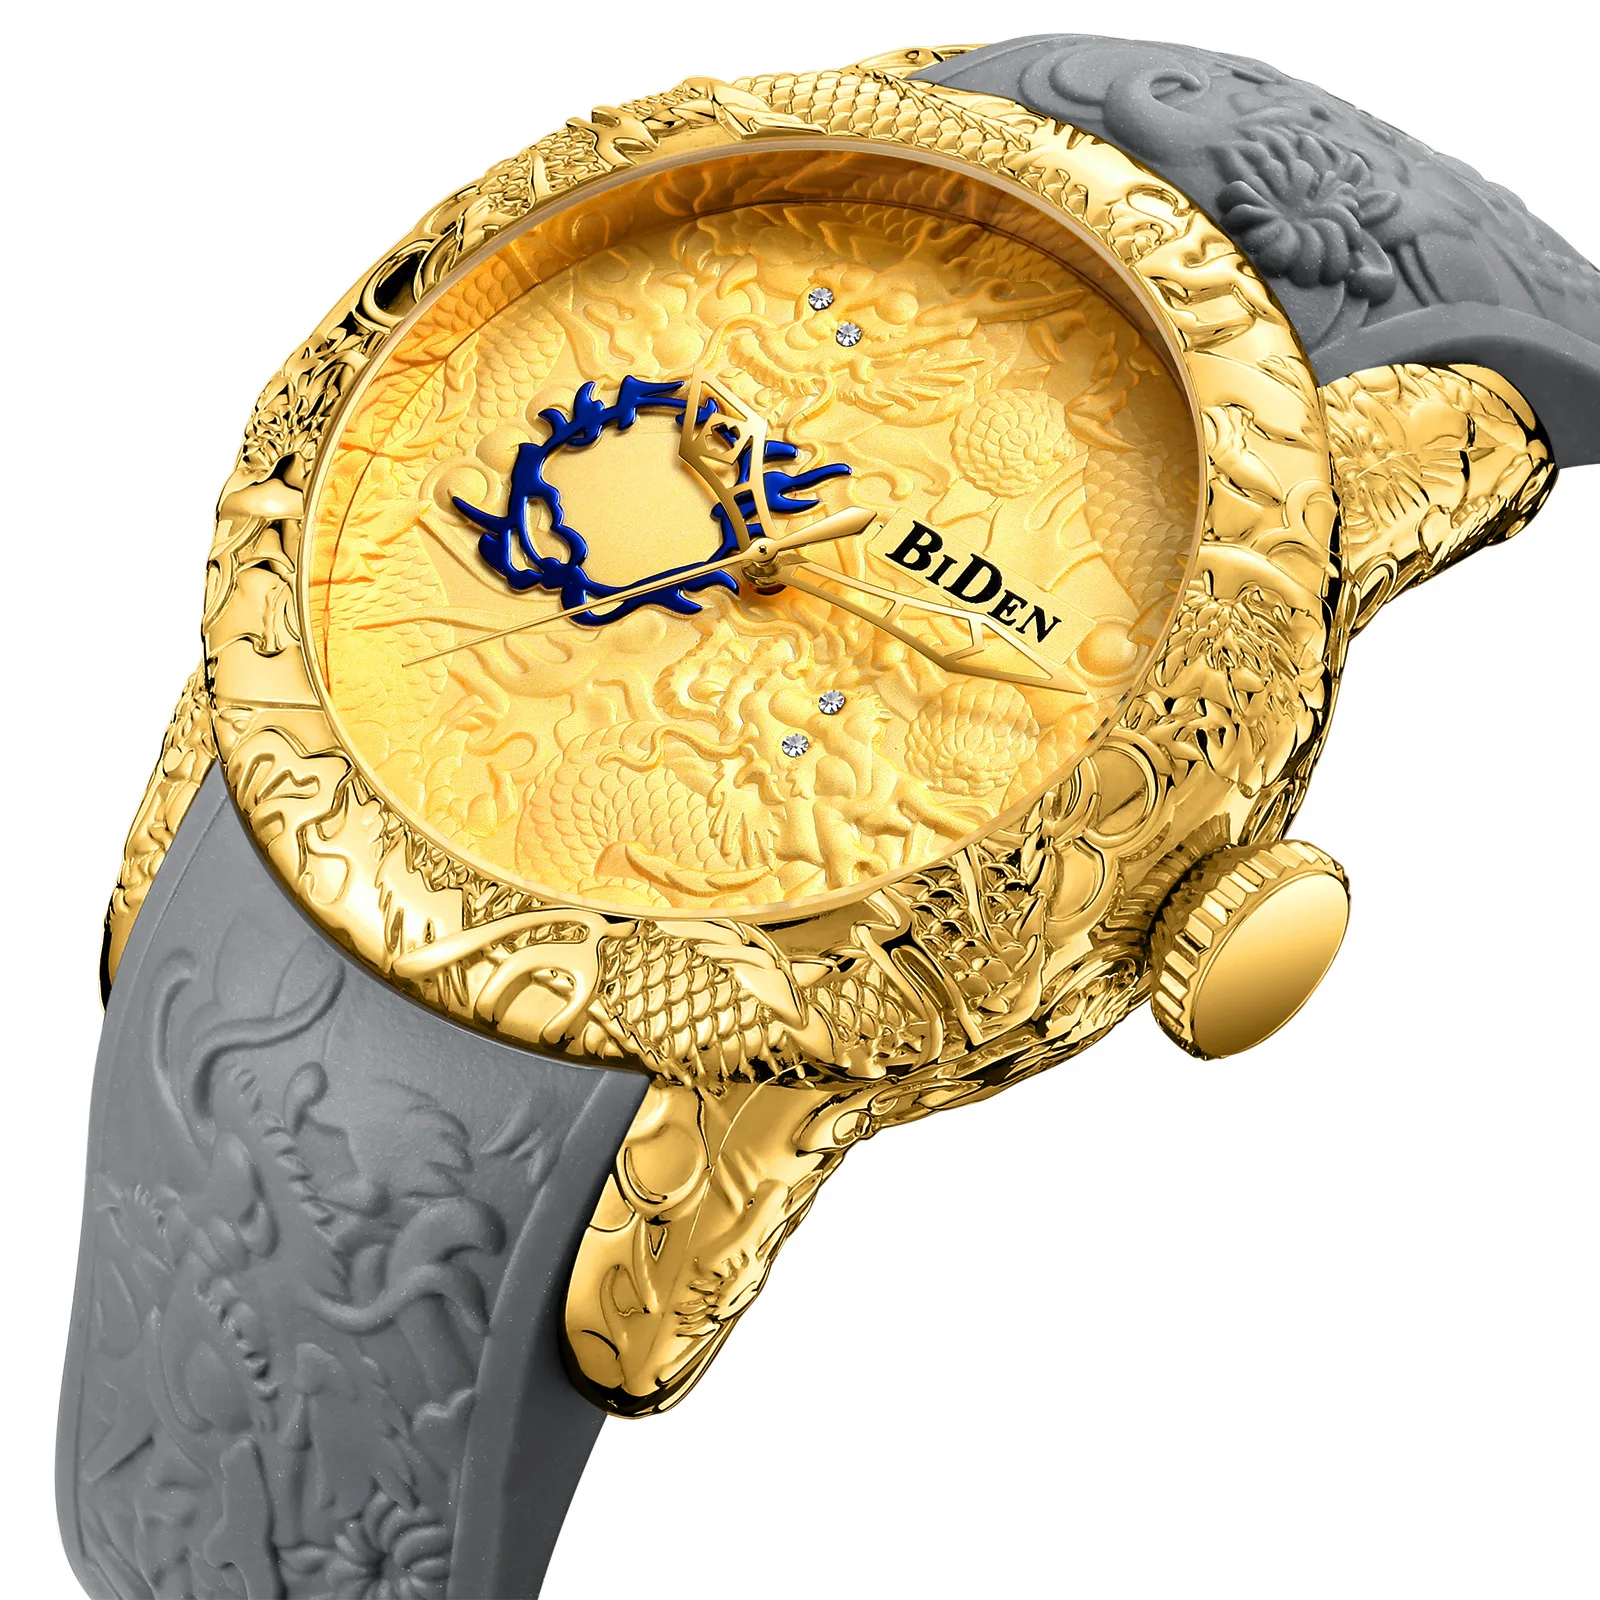 Biden Топ бренд класса люкс Золотой 3D Скульптура Дракон Мужские кварцевые часы для мужчин спортивные часы креативные наручные часы Relogio Masculino - Цвет: BIDEN gold